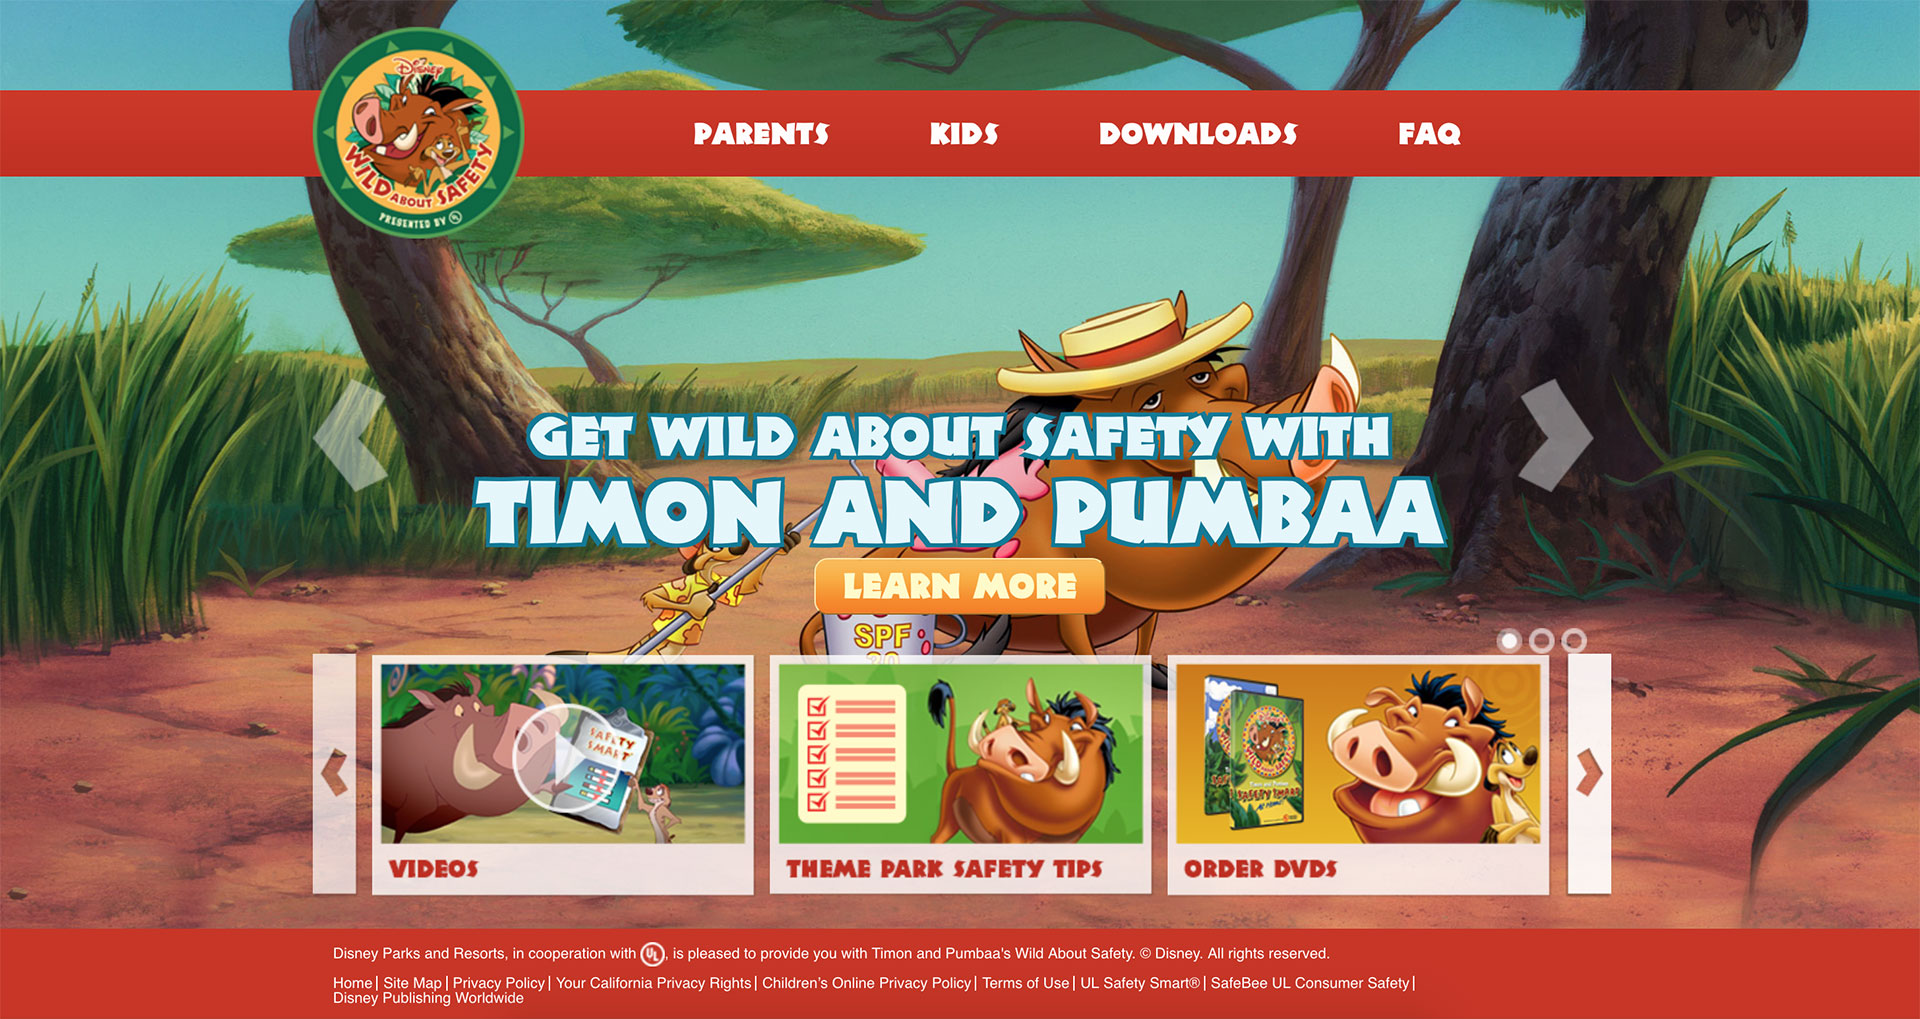 Disney's Wild About Safety website